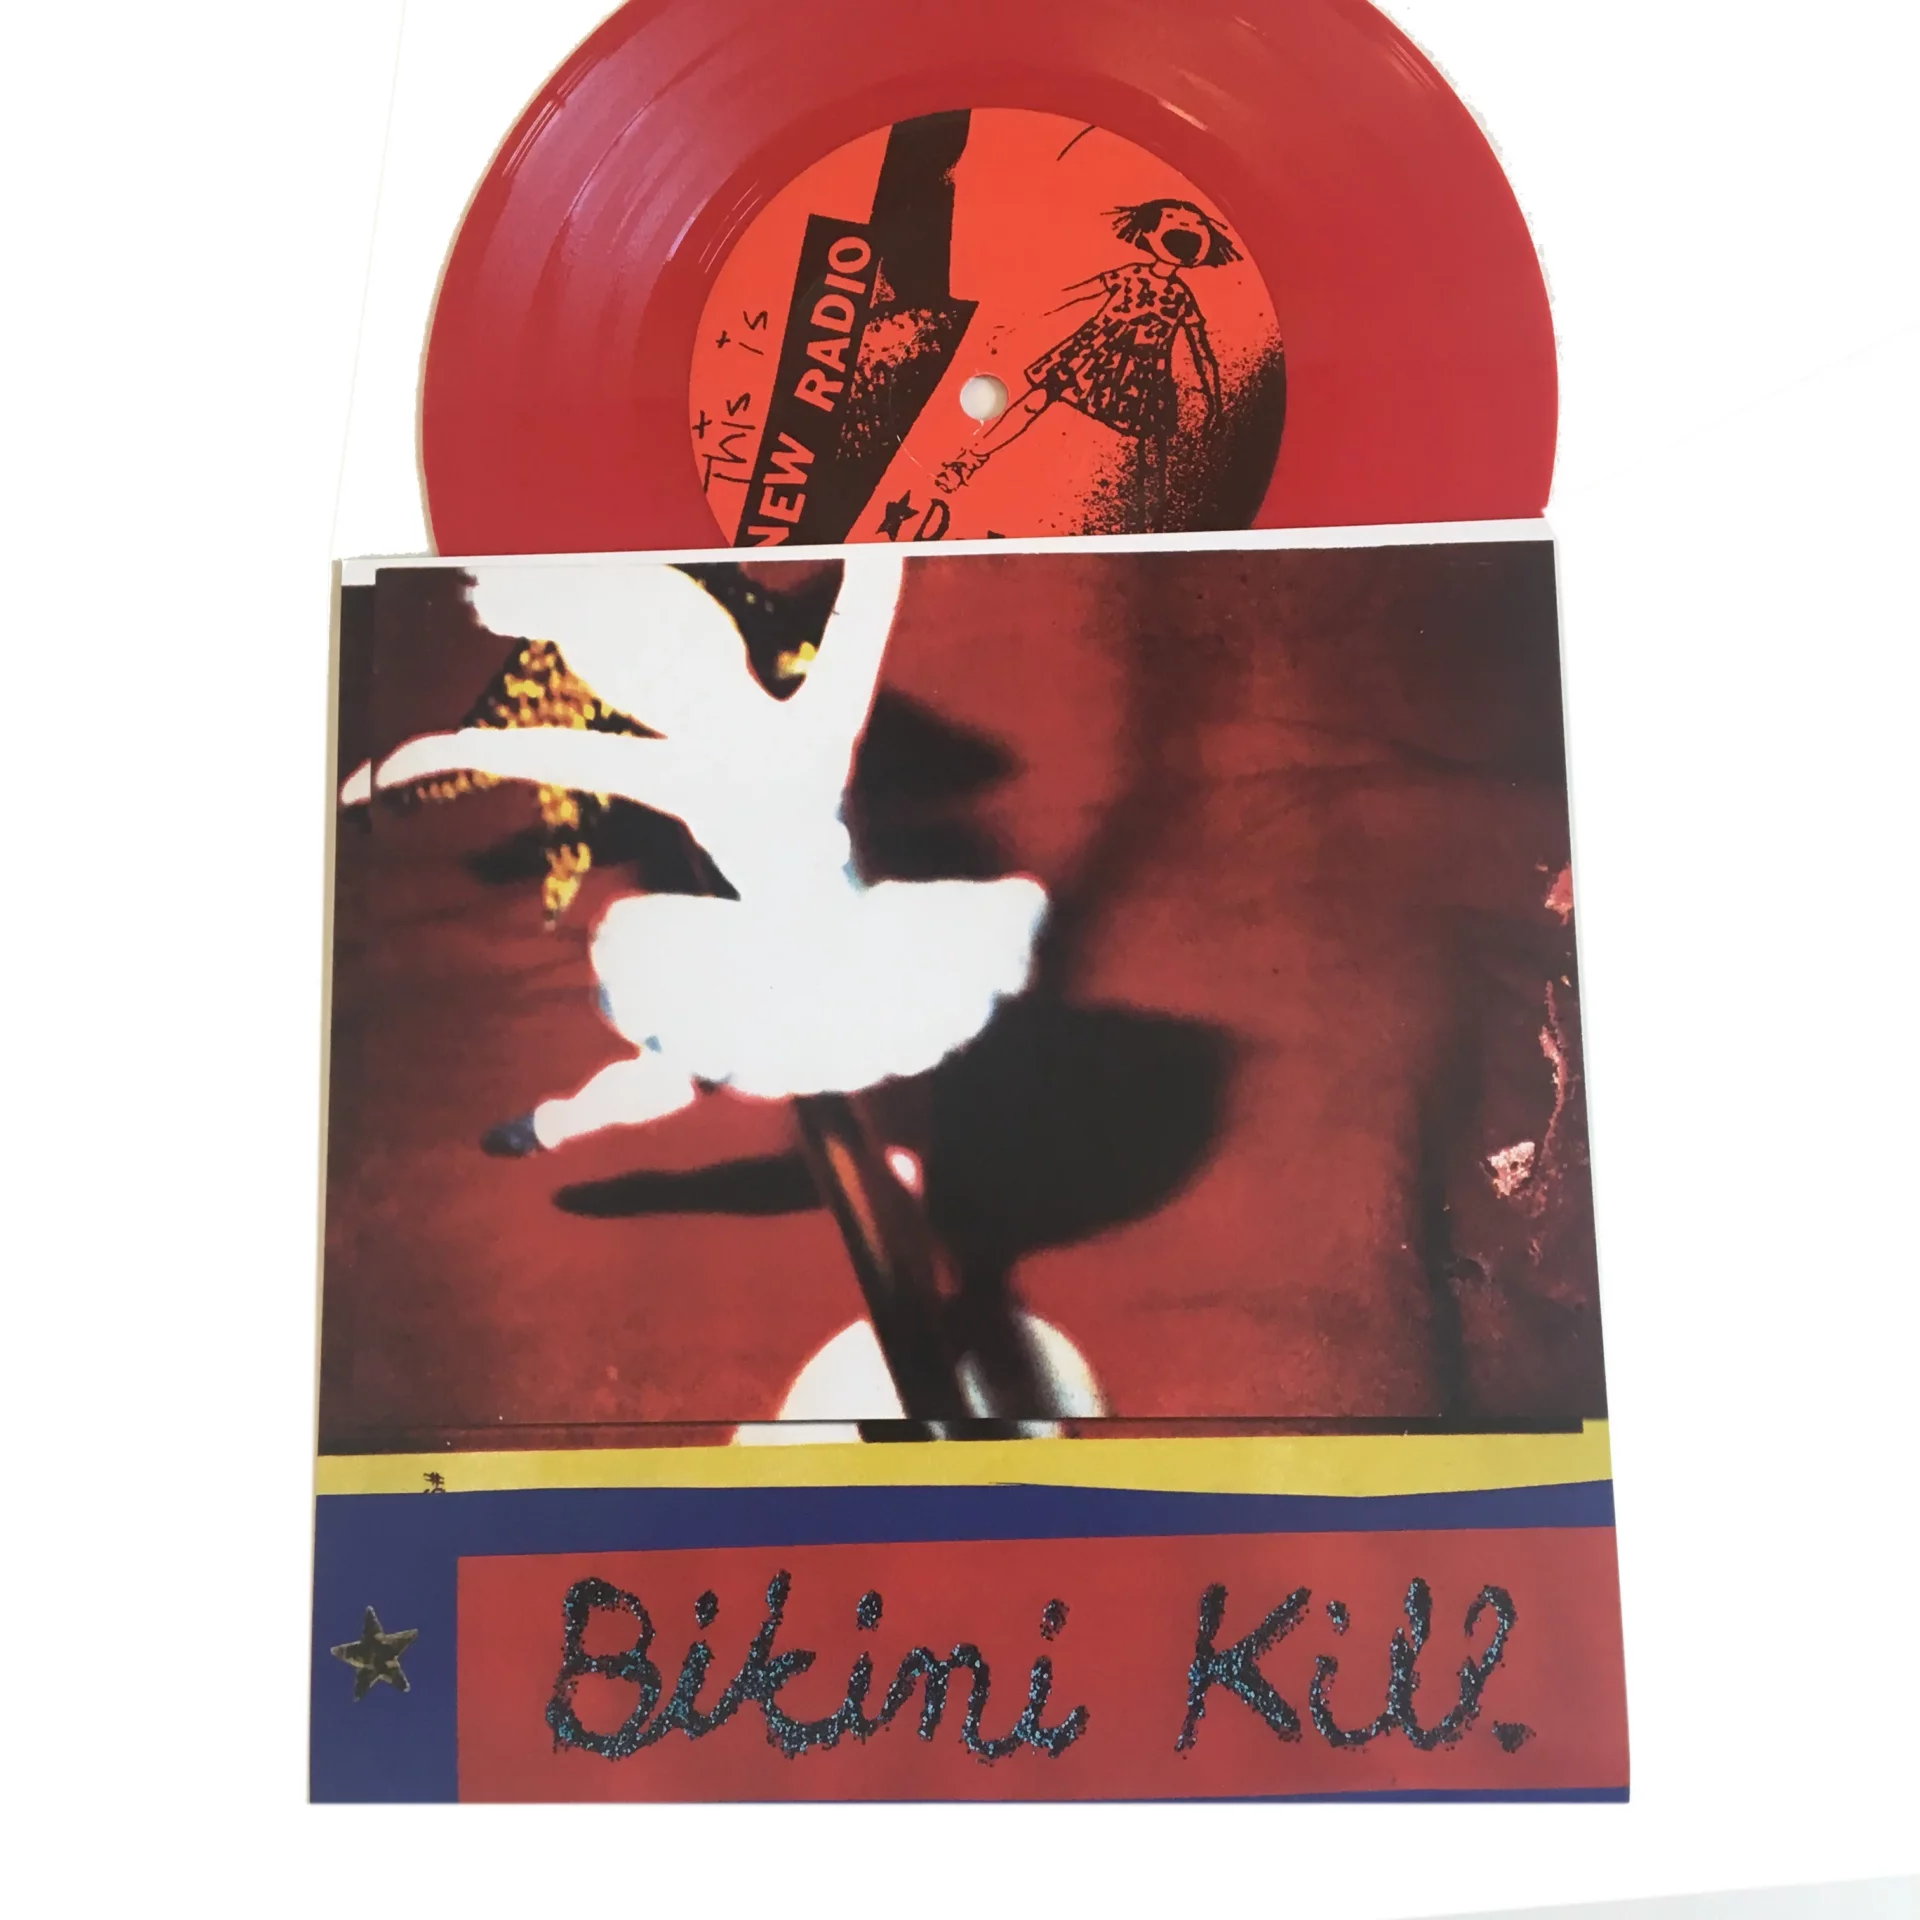 Bikini Kill - New Radio - 7 inch